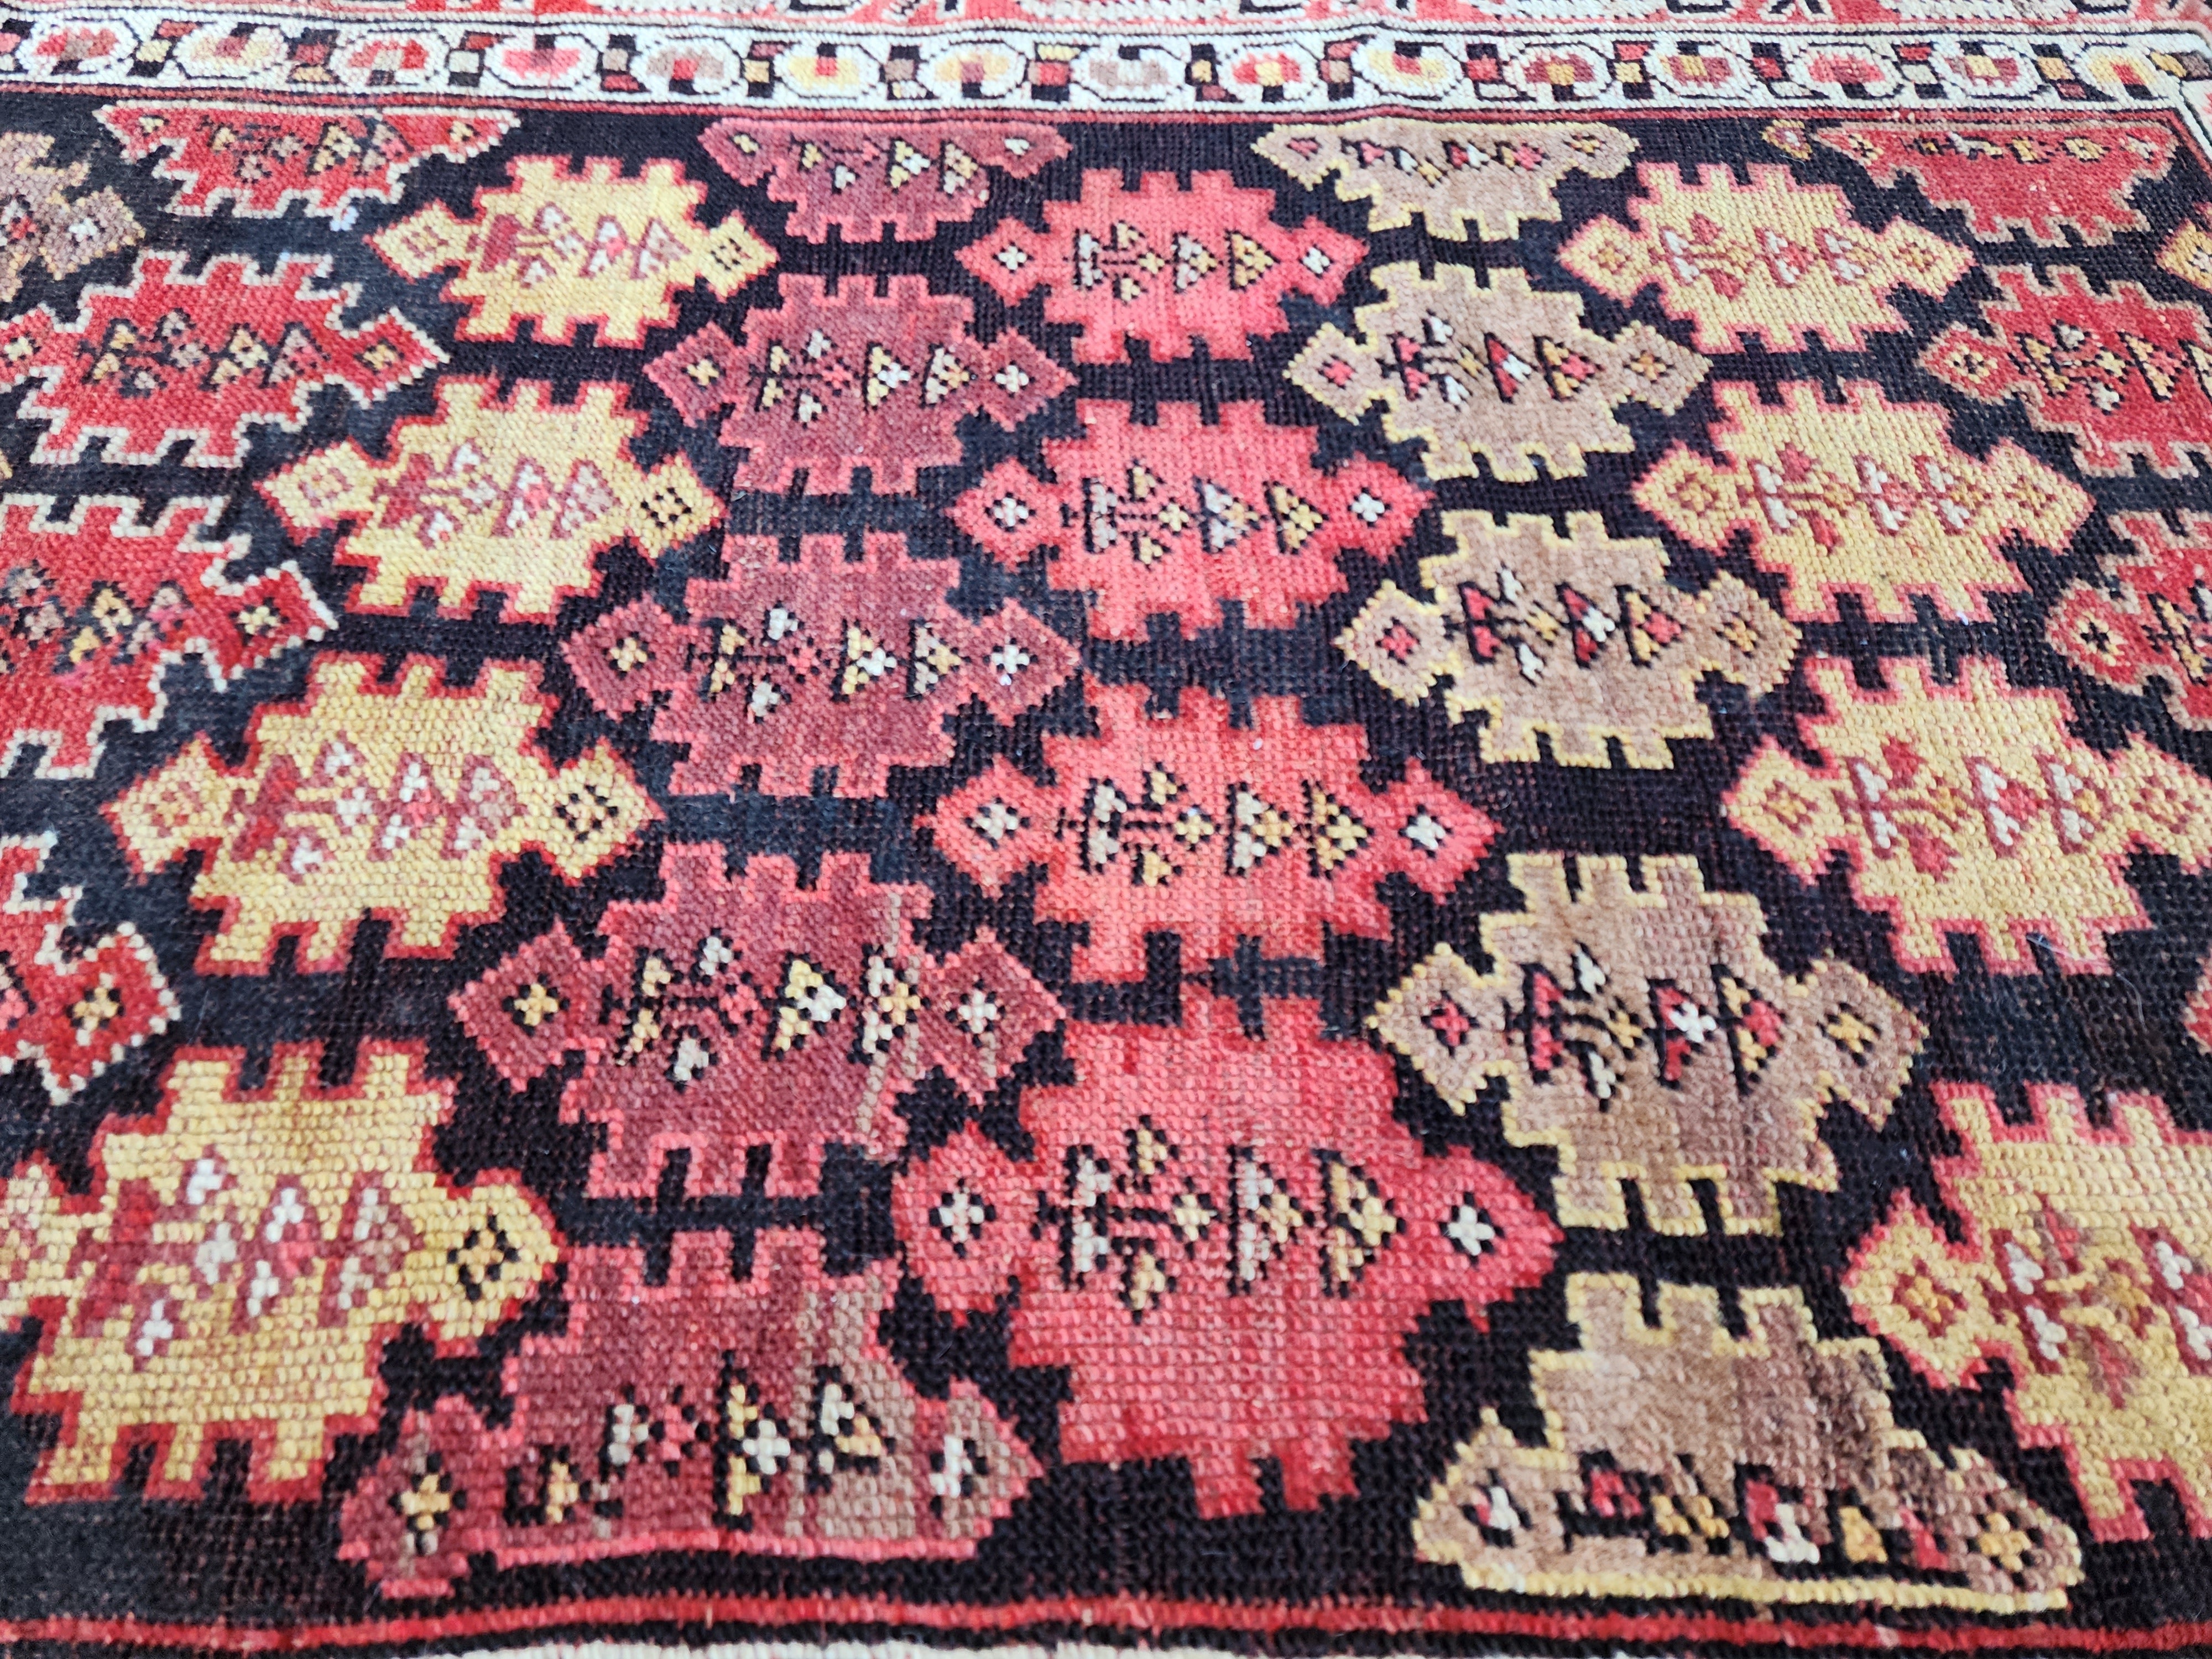 Late 19th Century Antique Caucasian Wool Rug